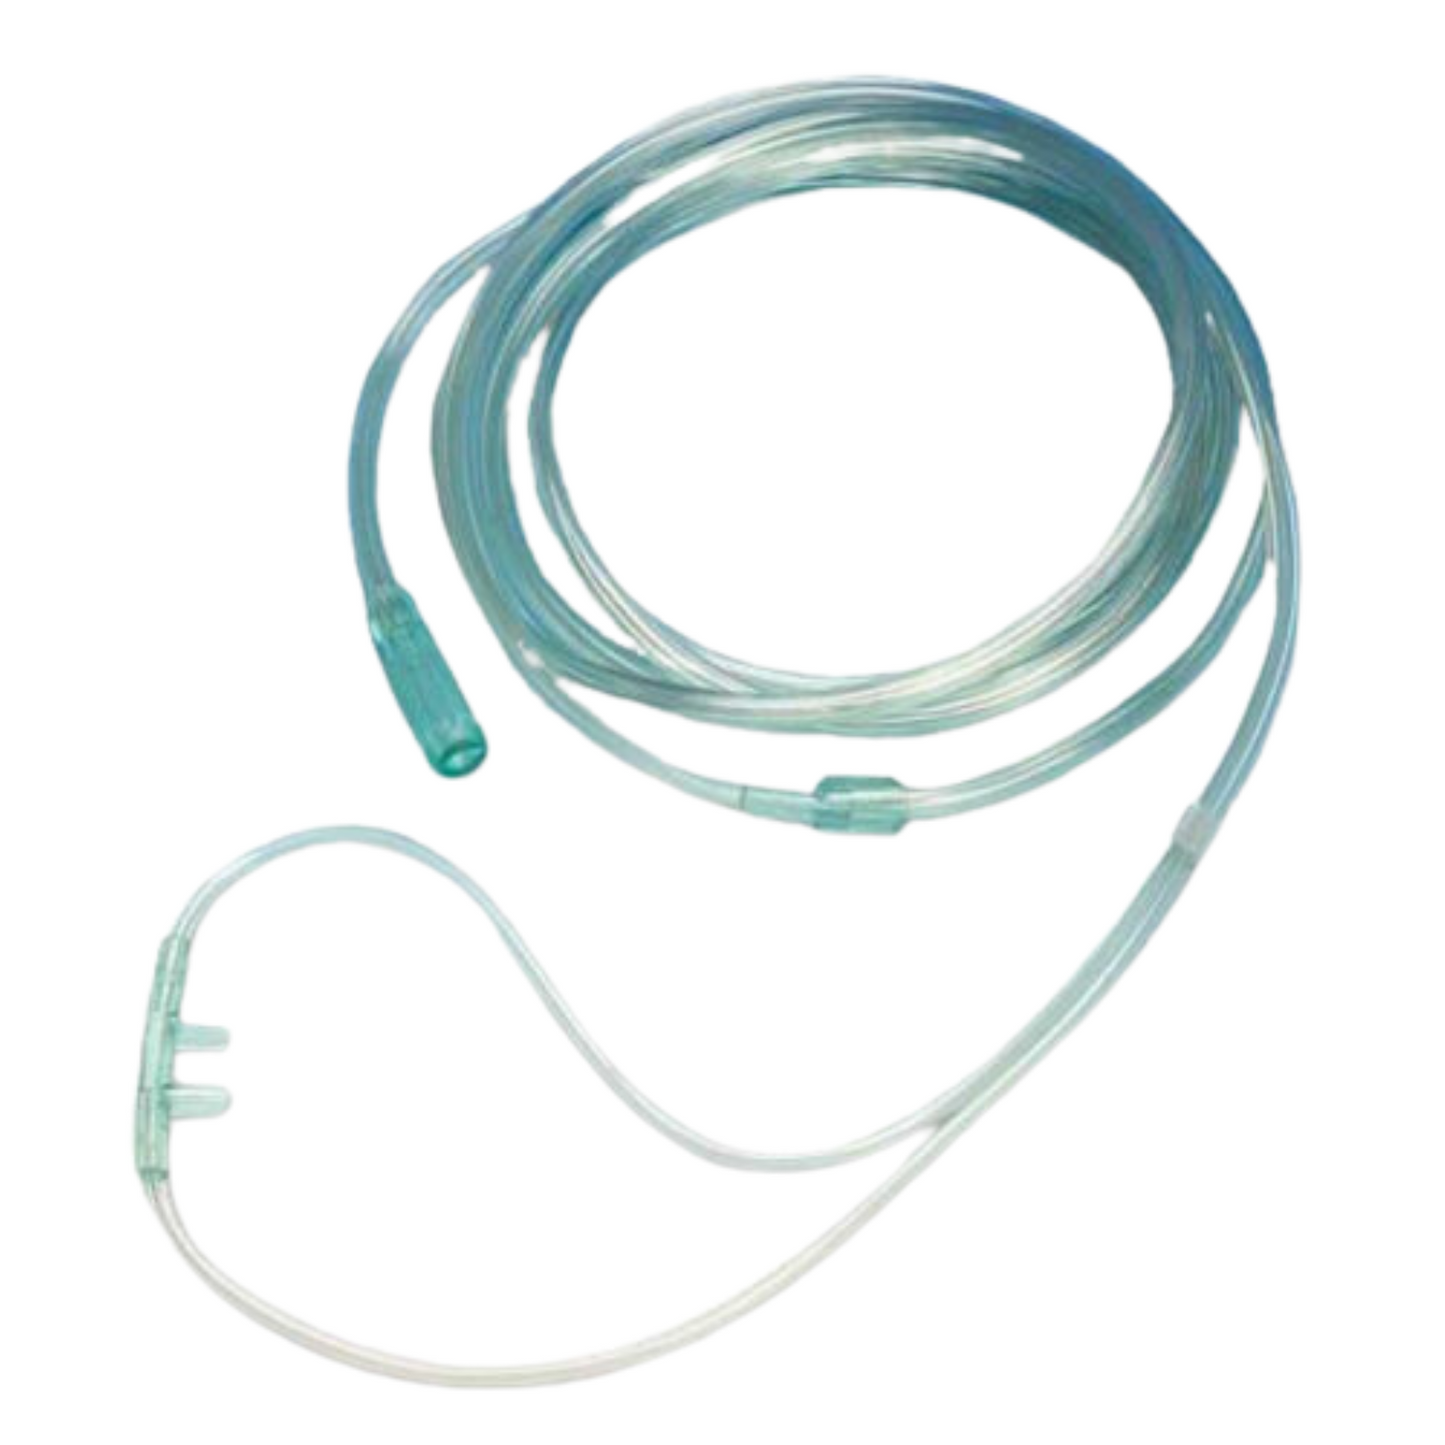 Gorgogliatore O2 con Occhialini e Tubo, per Terapia Ossigeno Professionale